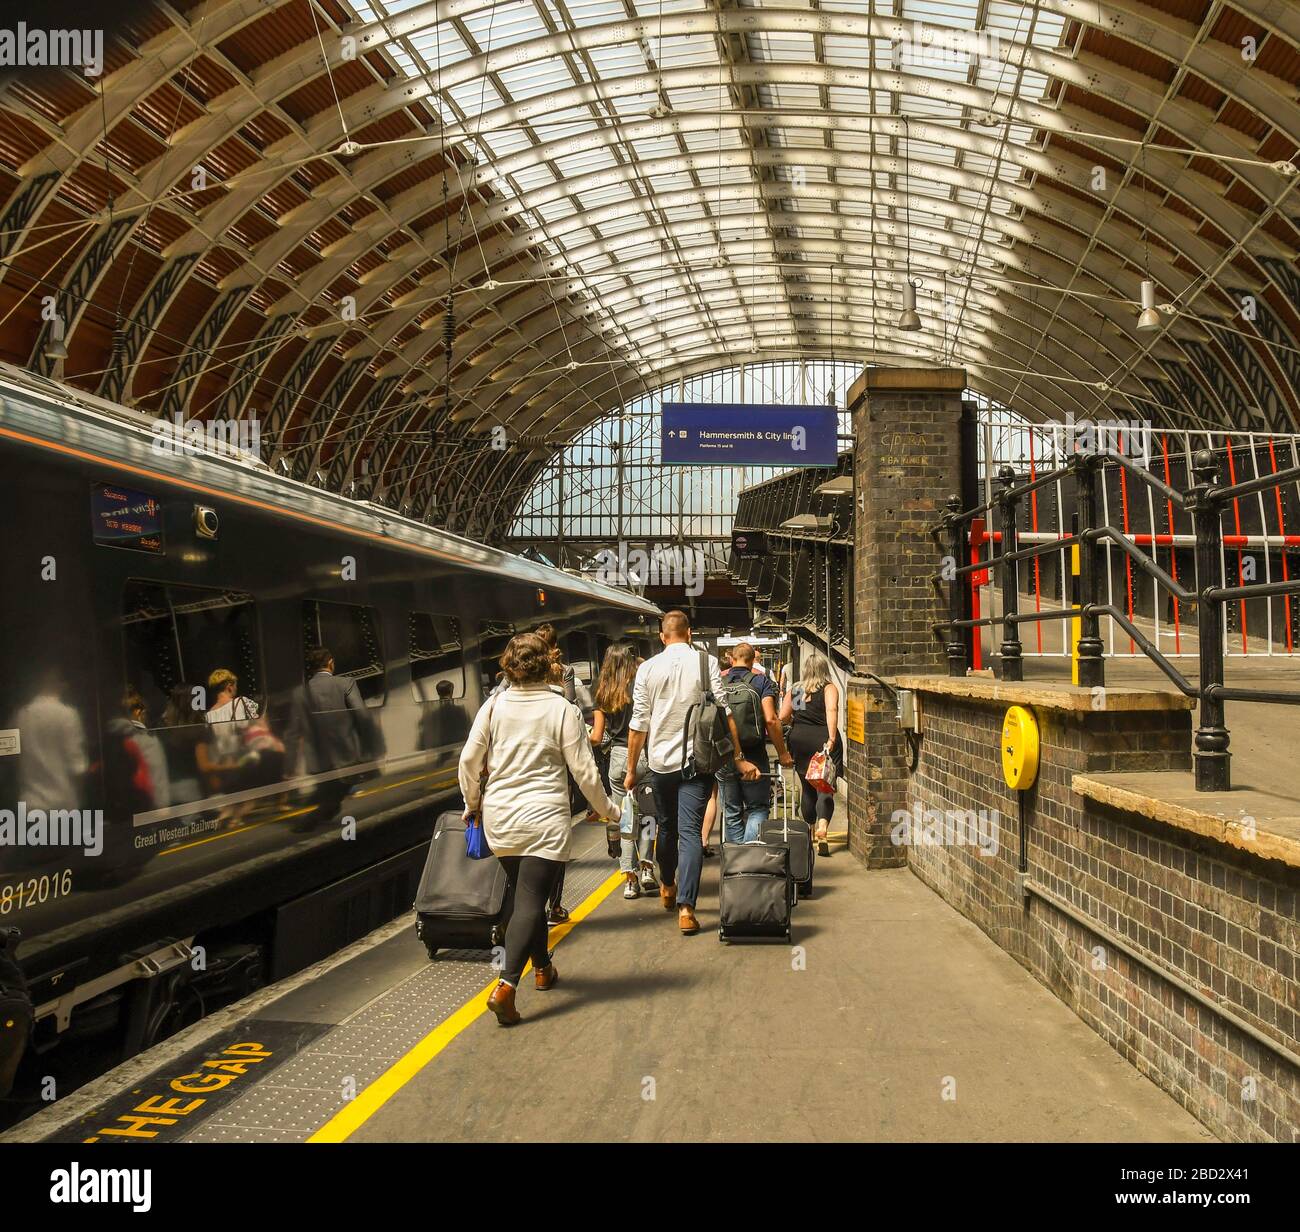 LONDON, ENGLAND - JULI 2018: Menschen, die auf einem Bahnsteig am Bahnhof London Paddington spazieren, um einen Zug zu nehmen Stockfoto